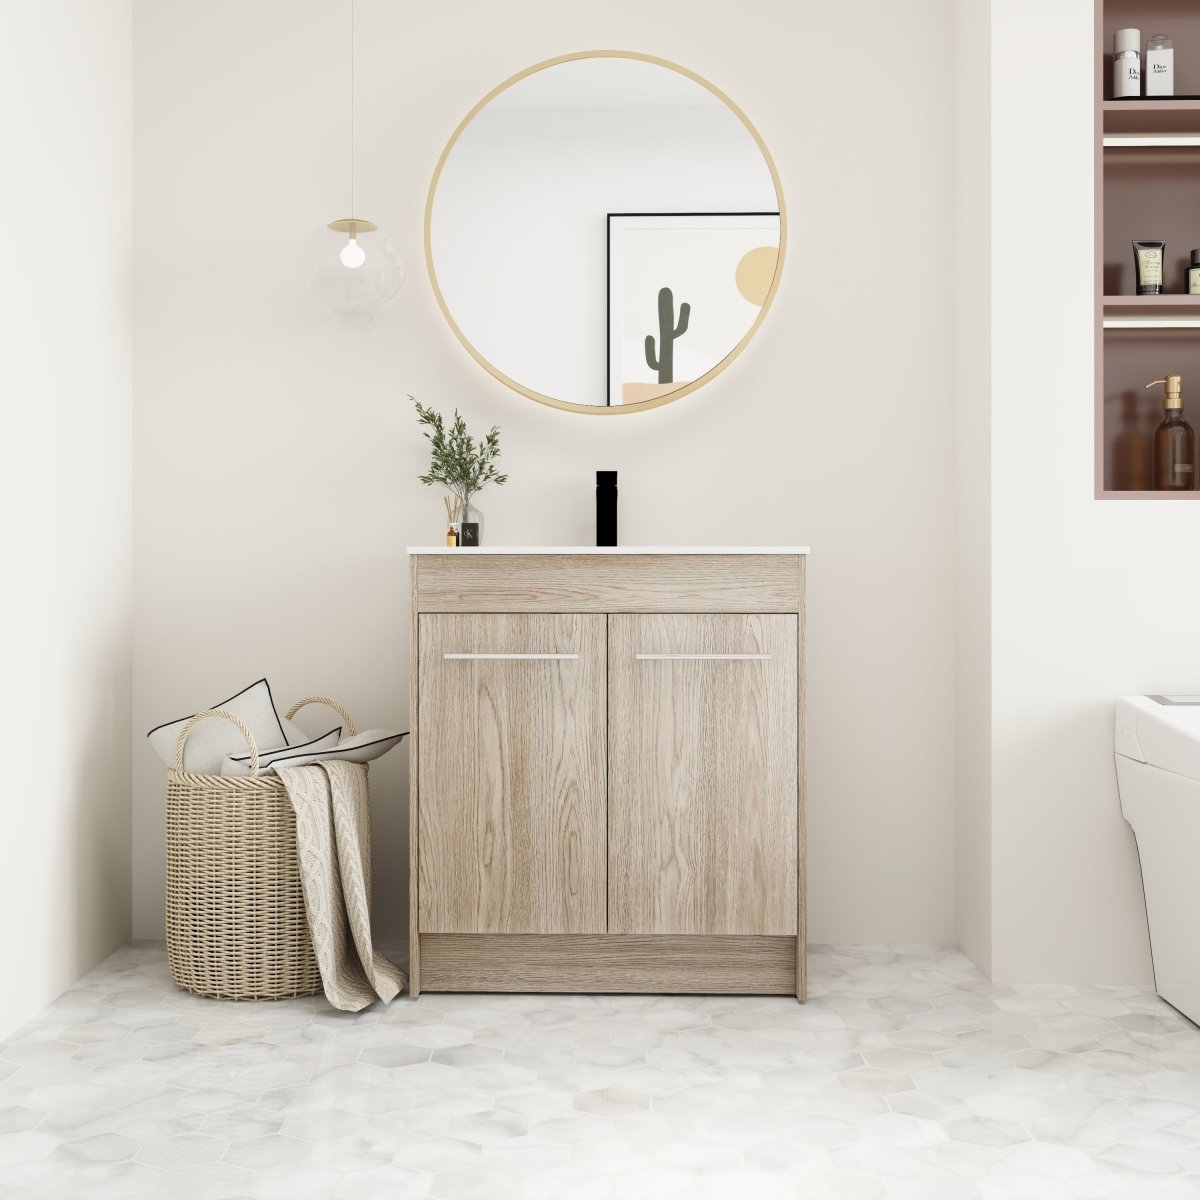 ExBrite 30 Inch Freestanding Bathroom Vanity